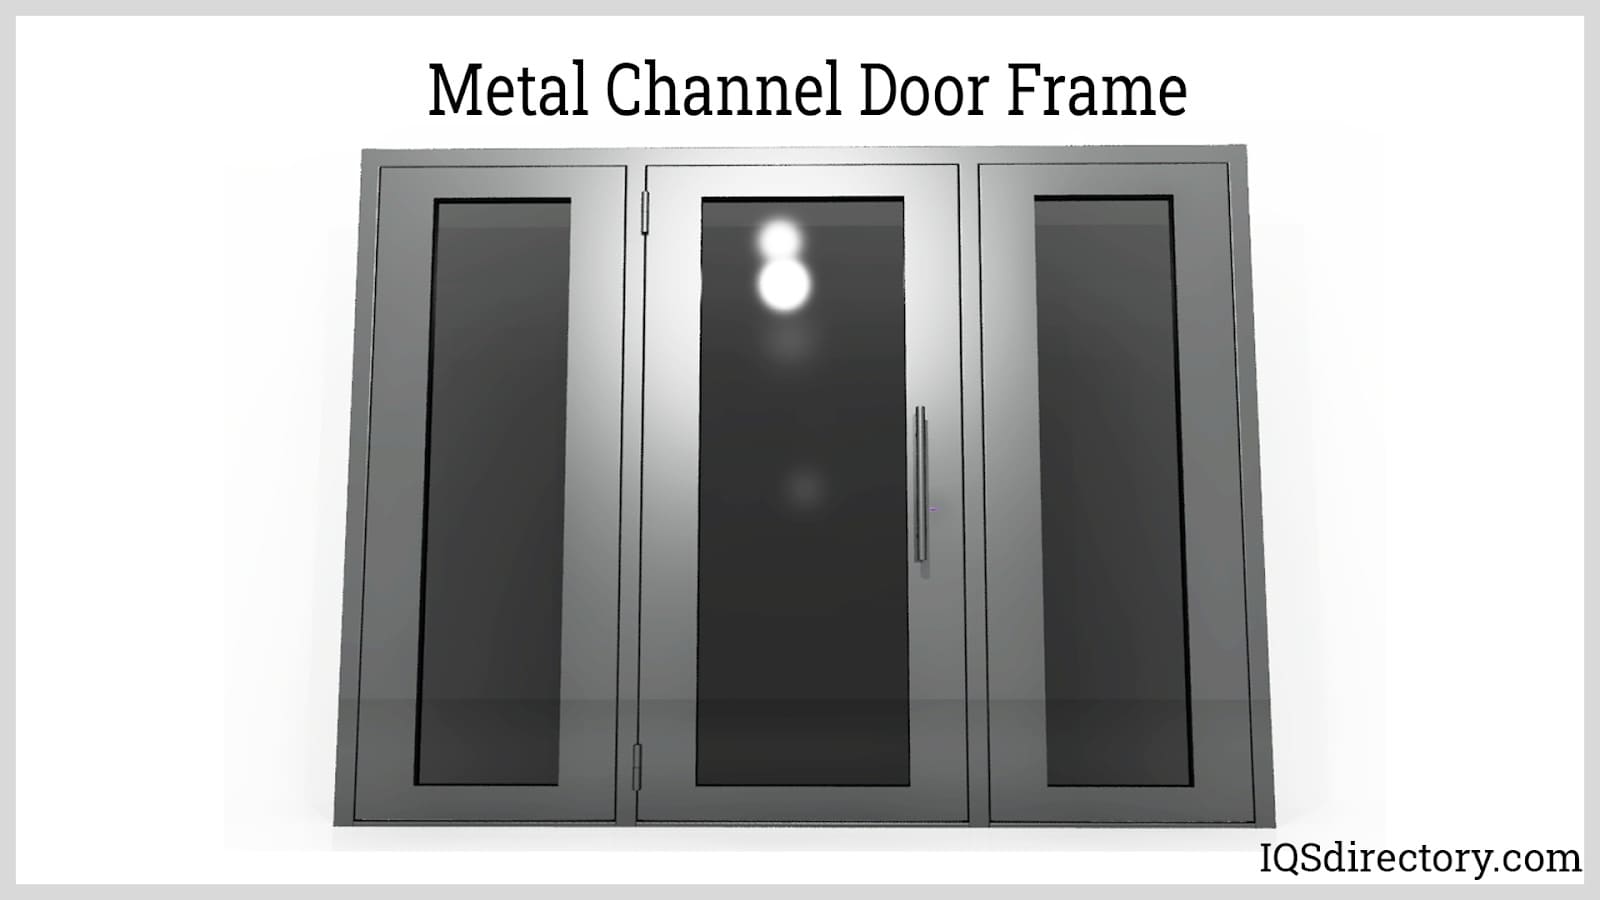 Metal Channel Door Frame